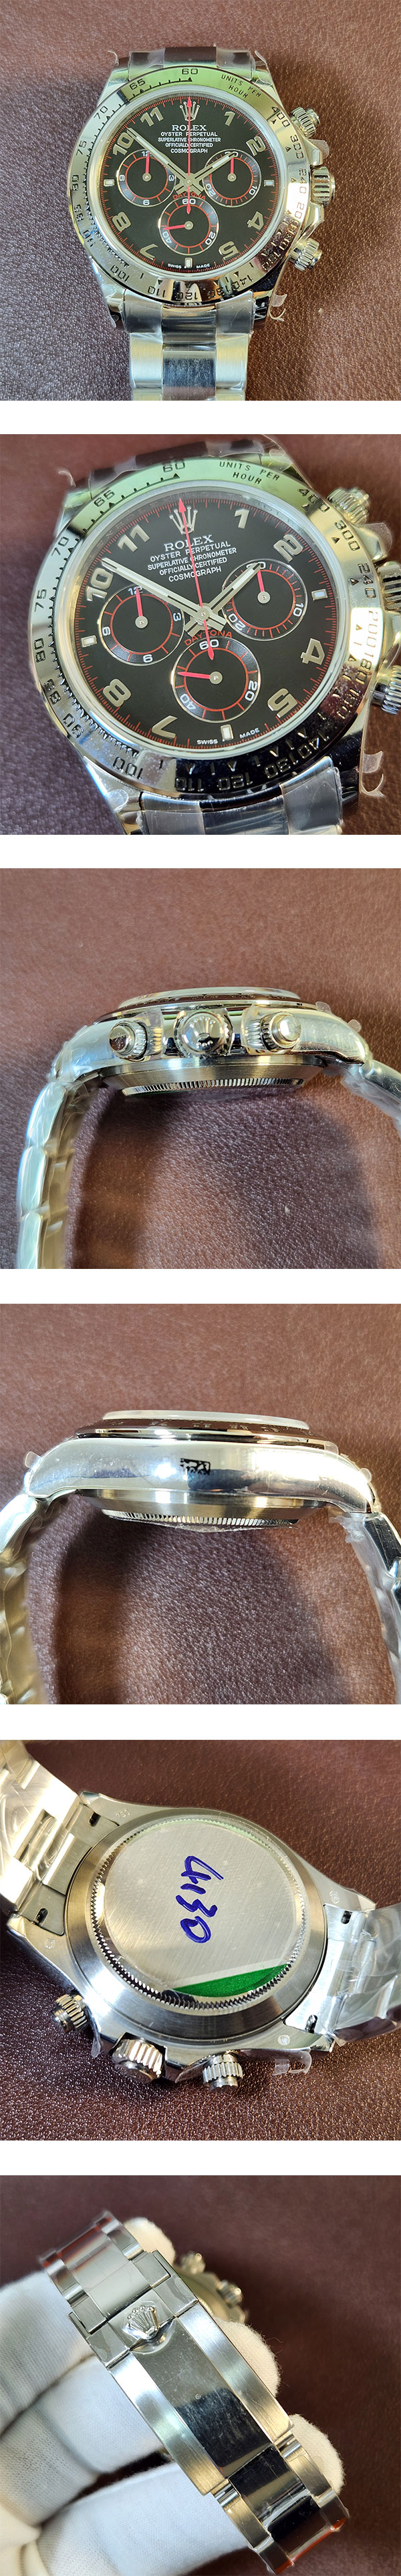 自信持てる腕時計 デイトナ 116509 ロレックススーパーコピー